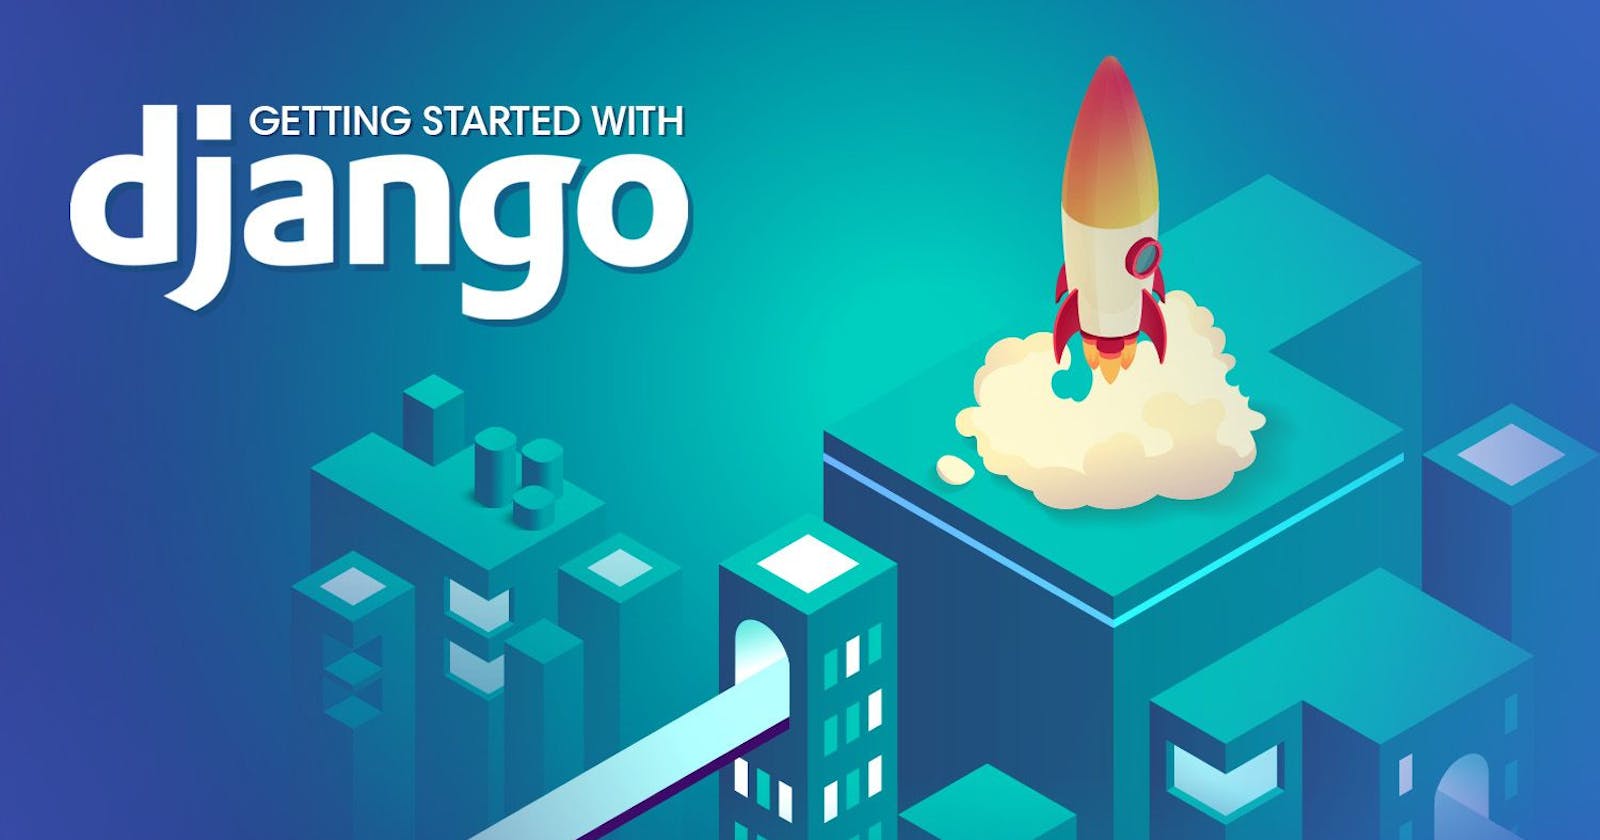 How to start an app in Django